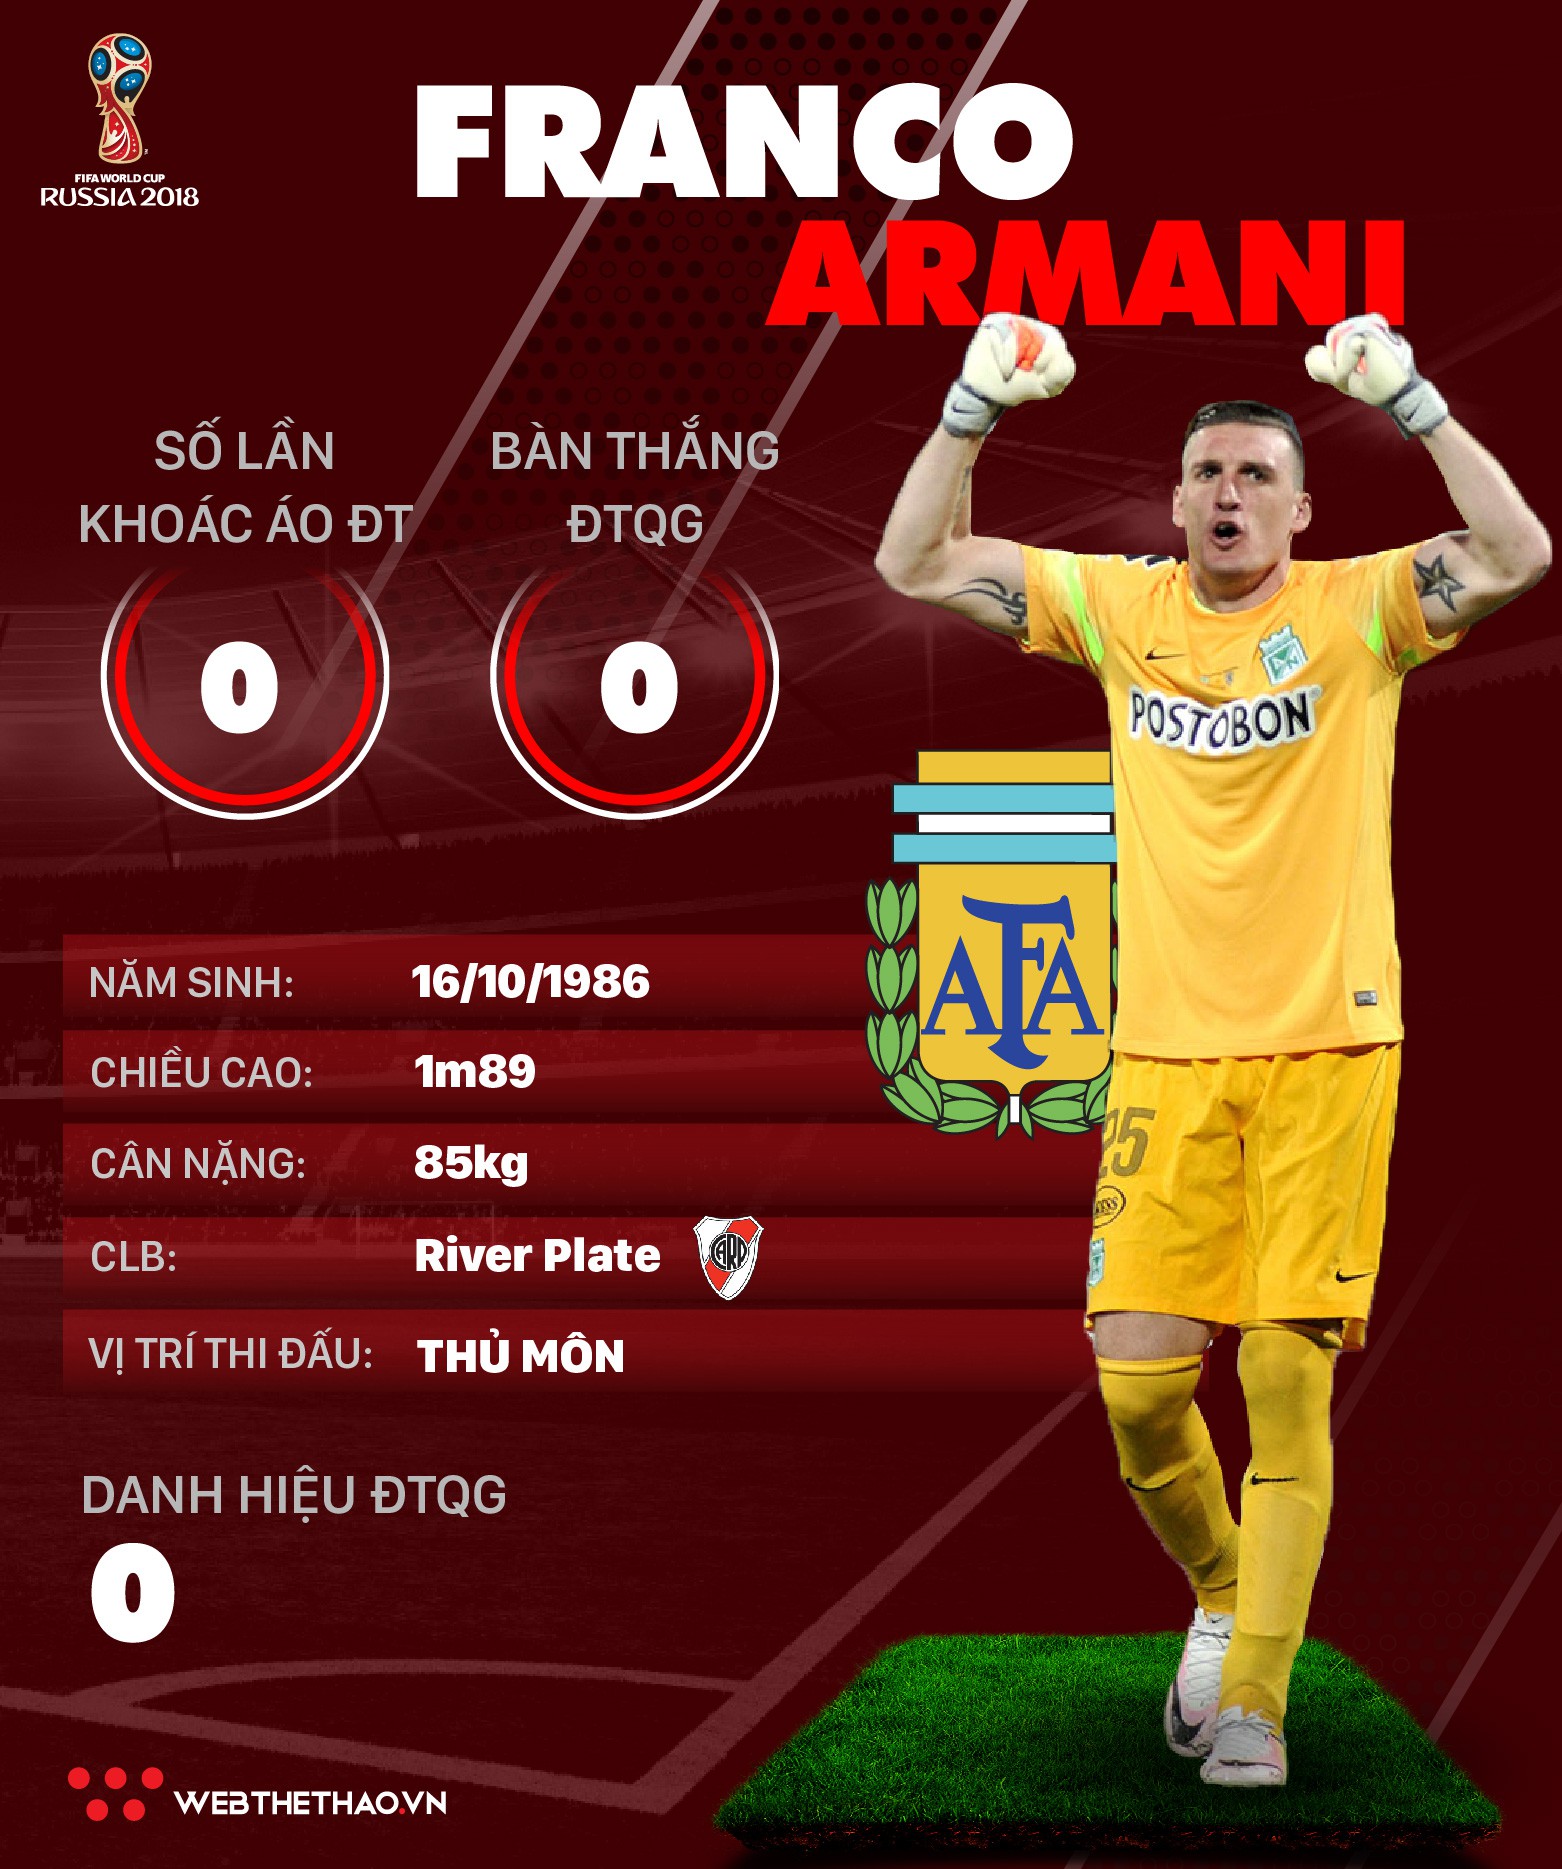 Thông tin cầu thủ Franco Armani của ĐT Argentina dự World Cup 2018